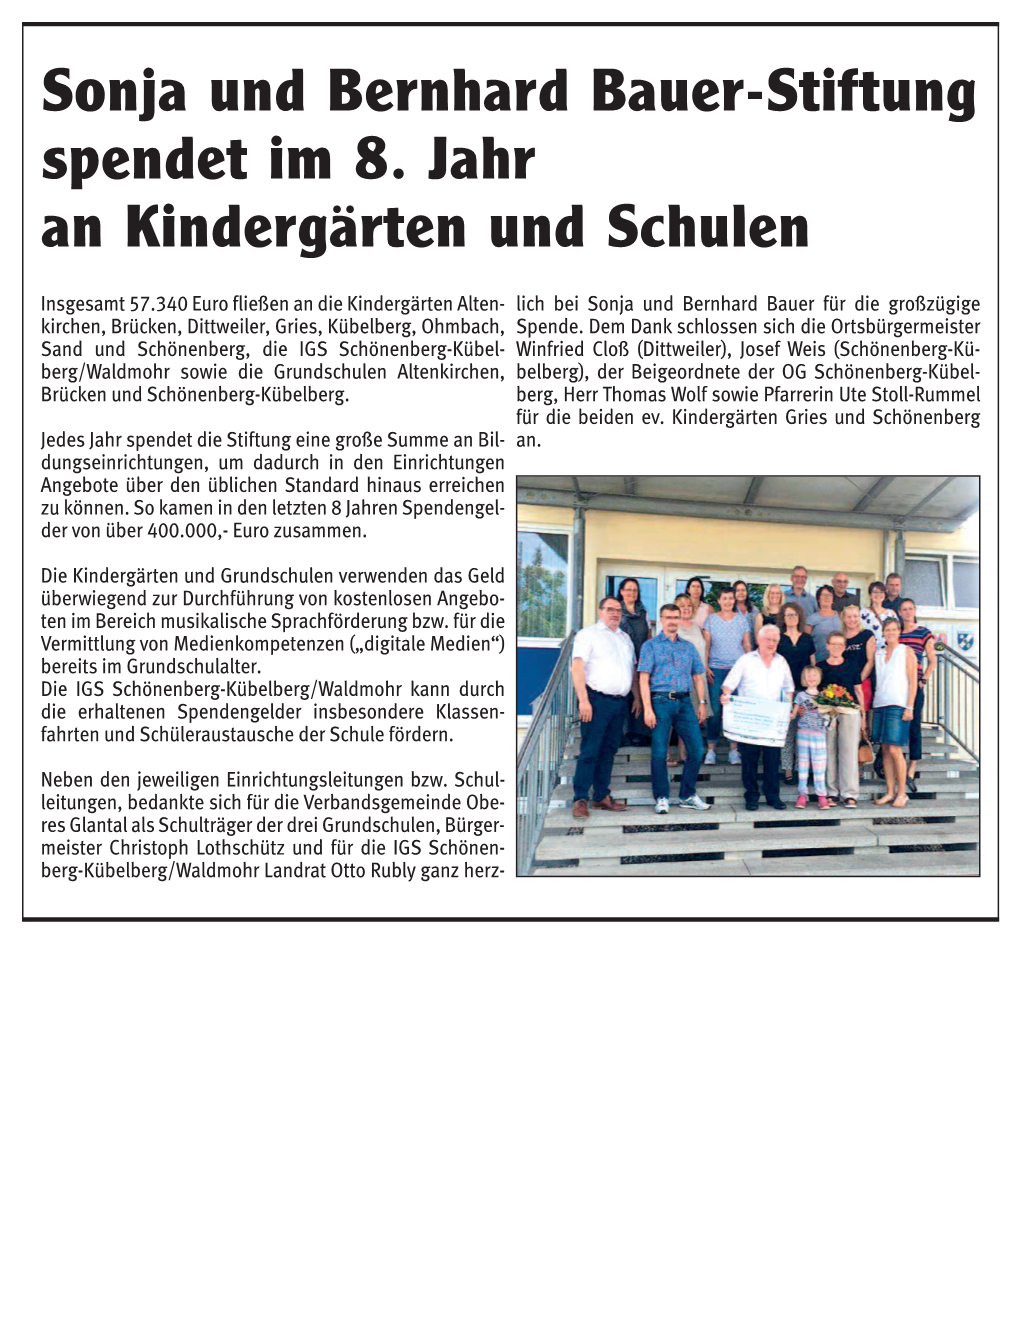 Sonja Und Bernhard Bauer-Stiftung Spendet Im 8. Jahr an Kindergärten Und Schulen